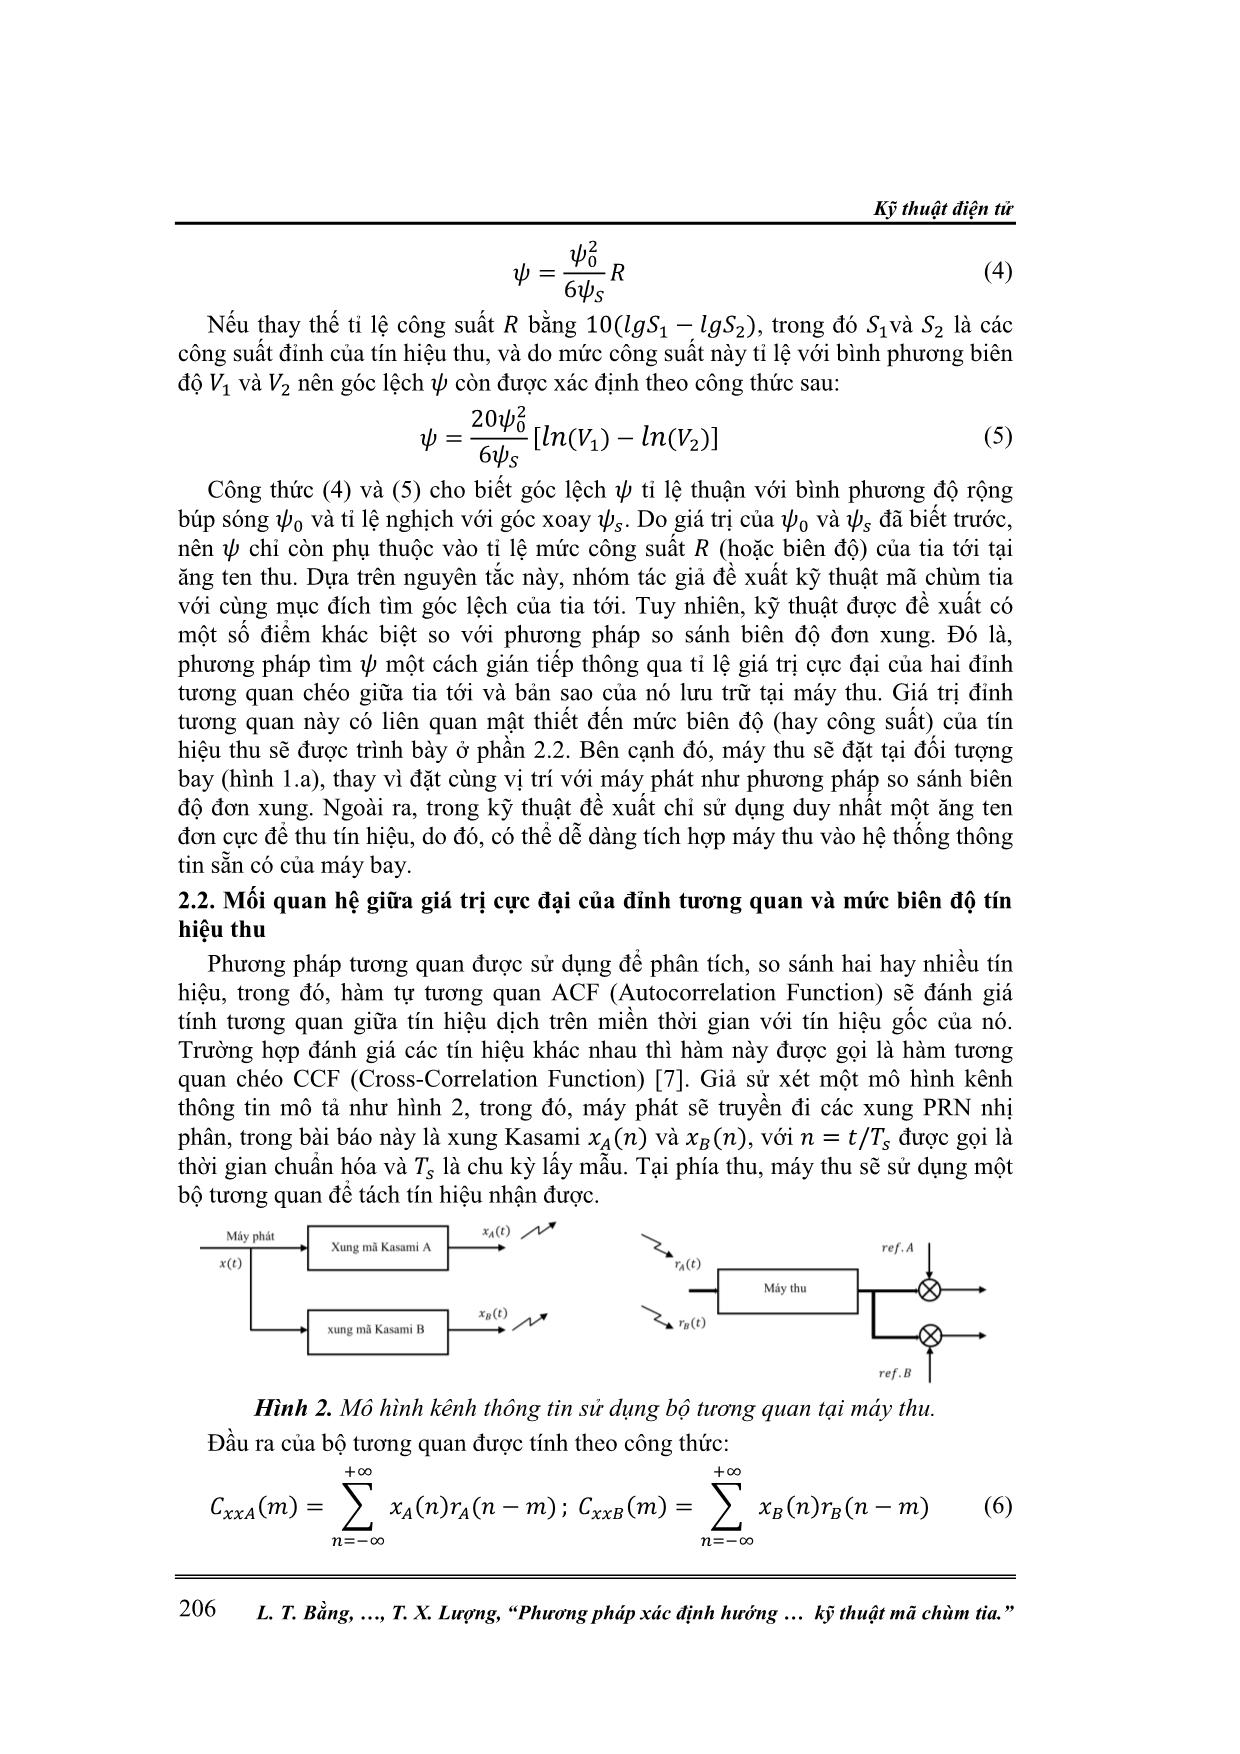 Phương pháp xác định hướng của máy bay sử dụng kỹ thuật mã chùm tia trang 3